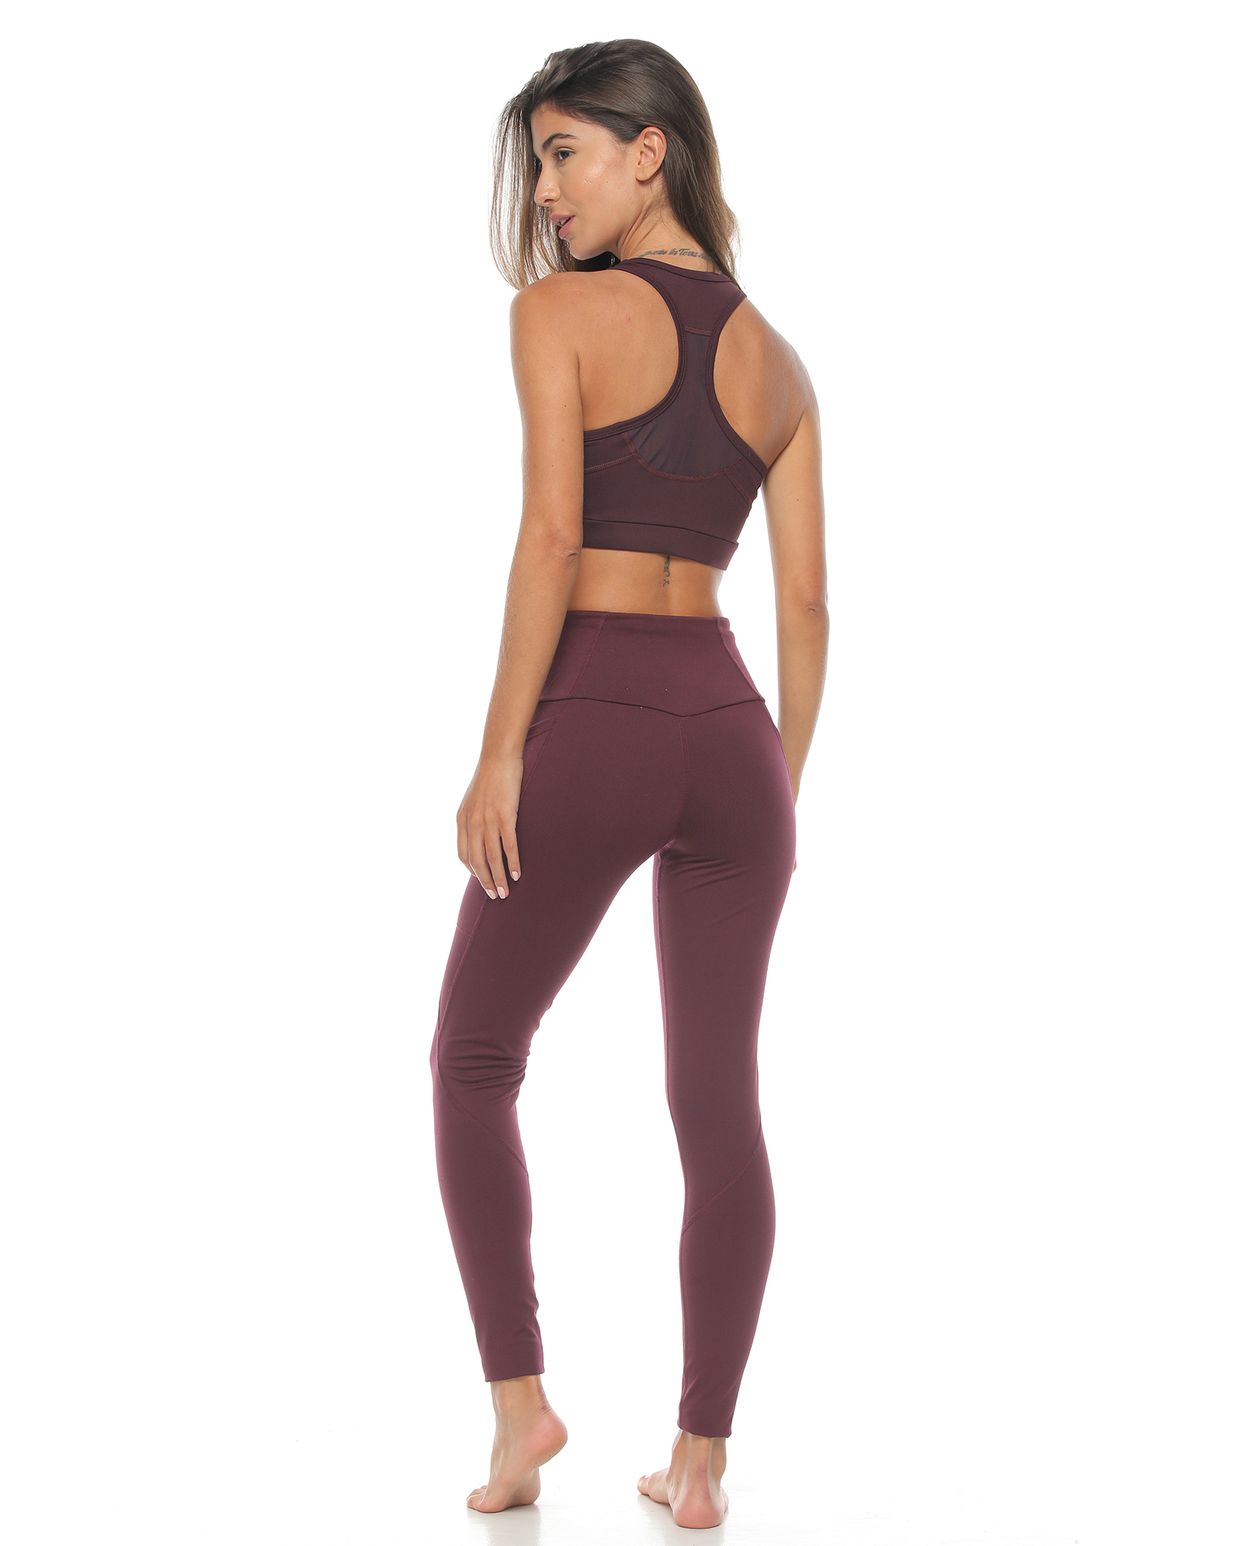 modelo con top y licra deportiva color berenjena para mujer cuerpo completo parte trasera